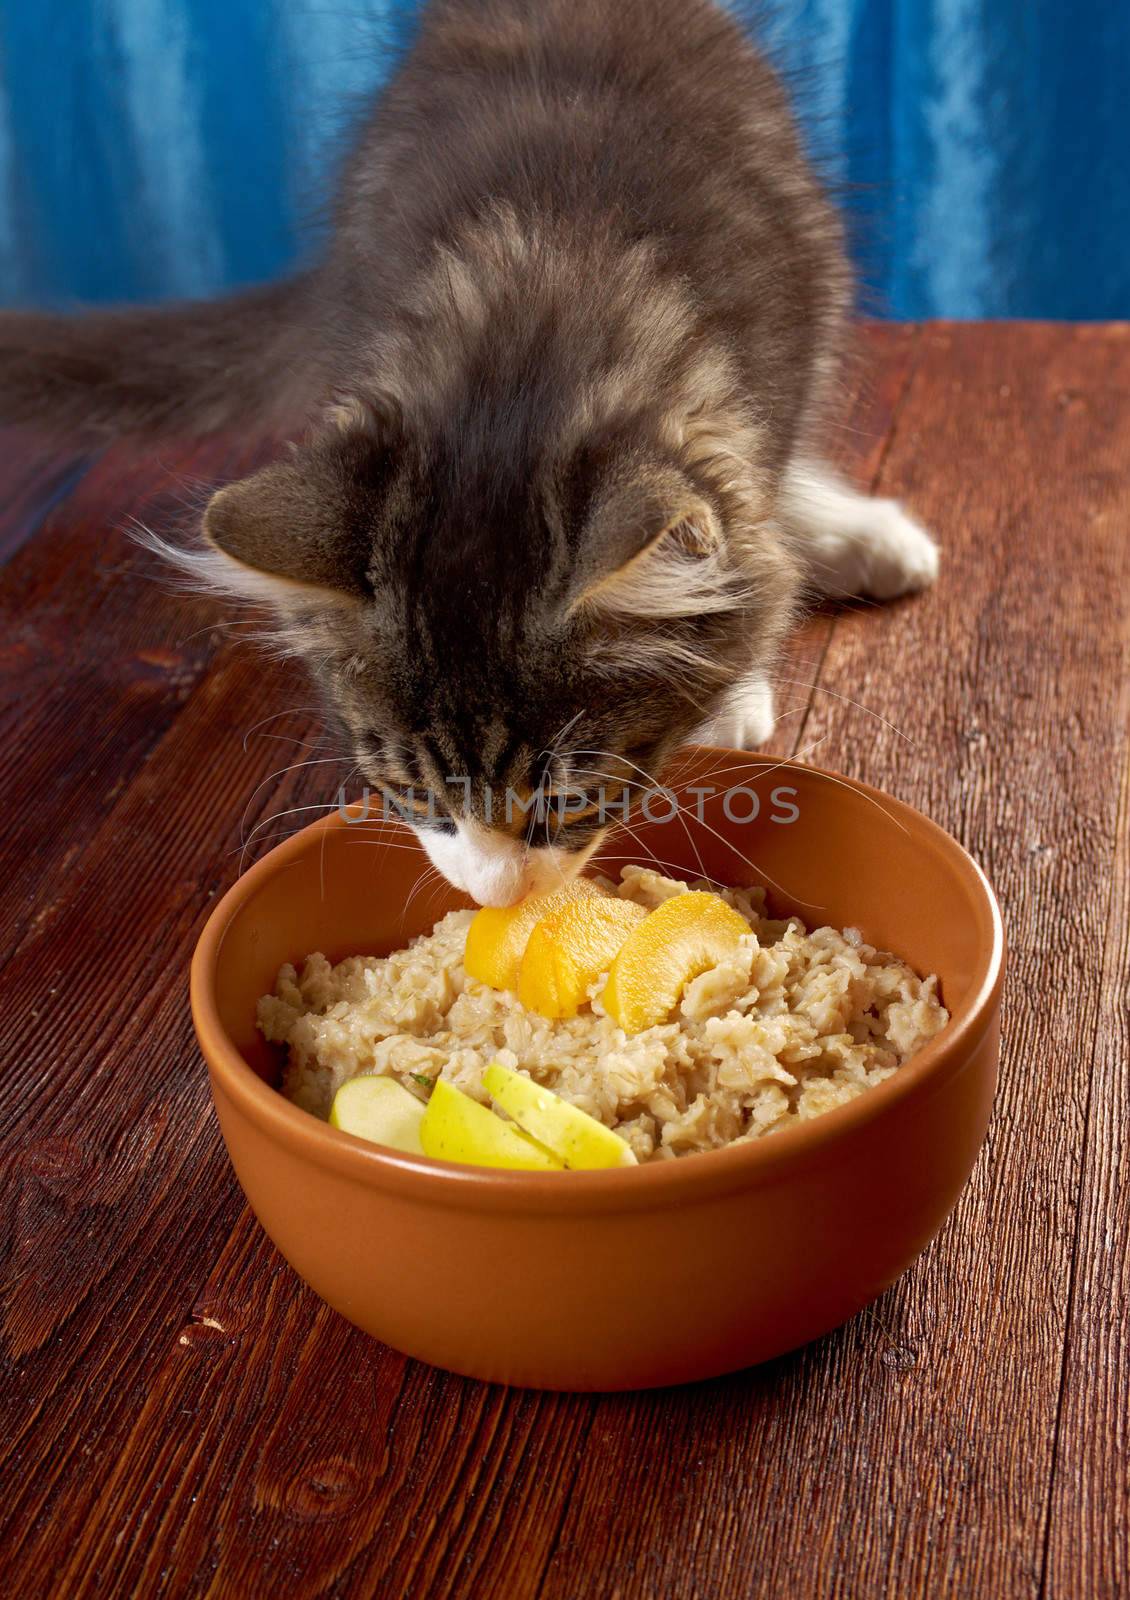 cat tries Oat porridge by Fanfo